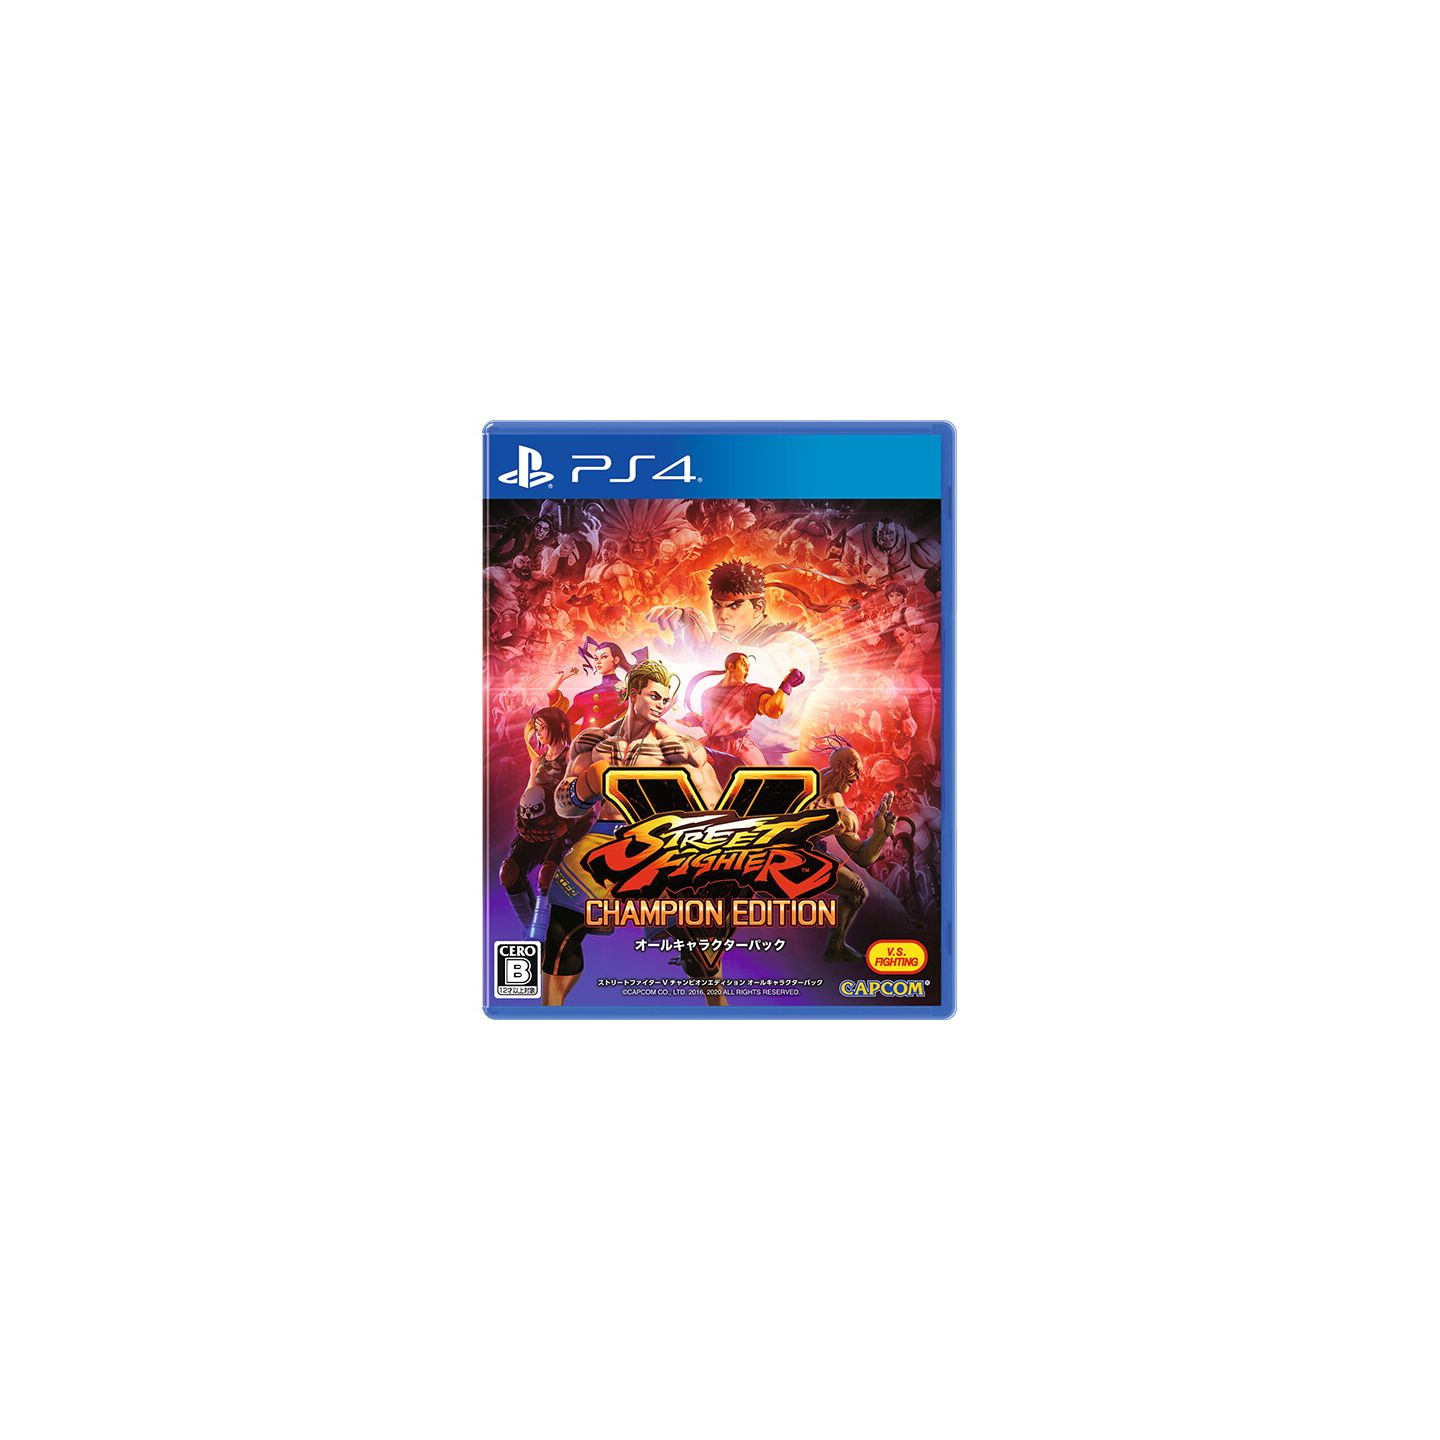 Street Fighter V: Champion Edition (2020)